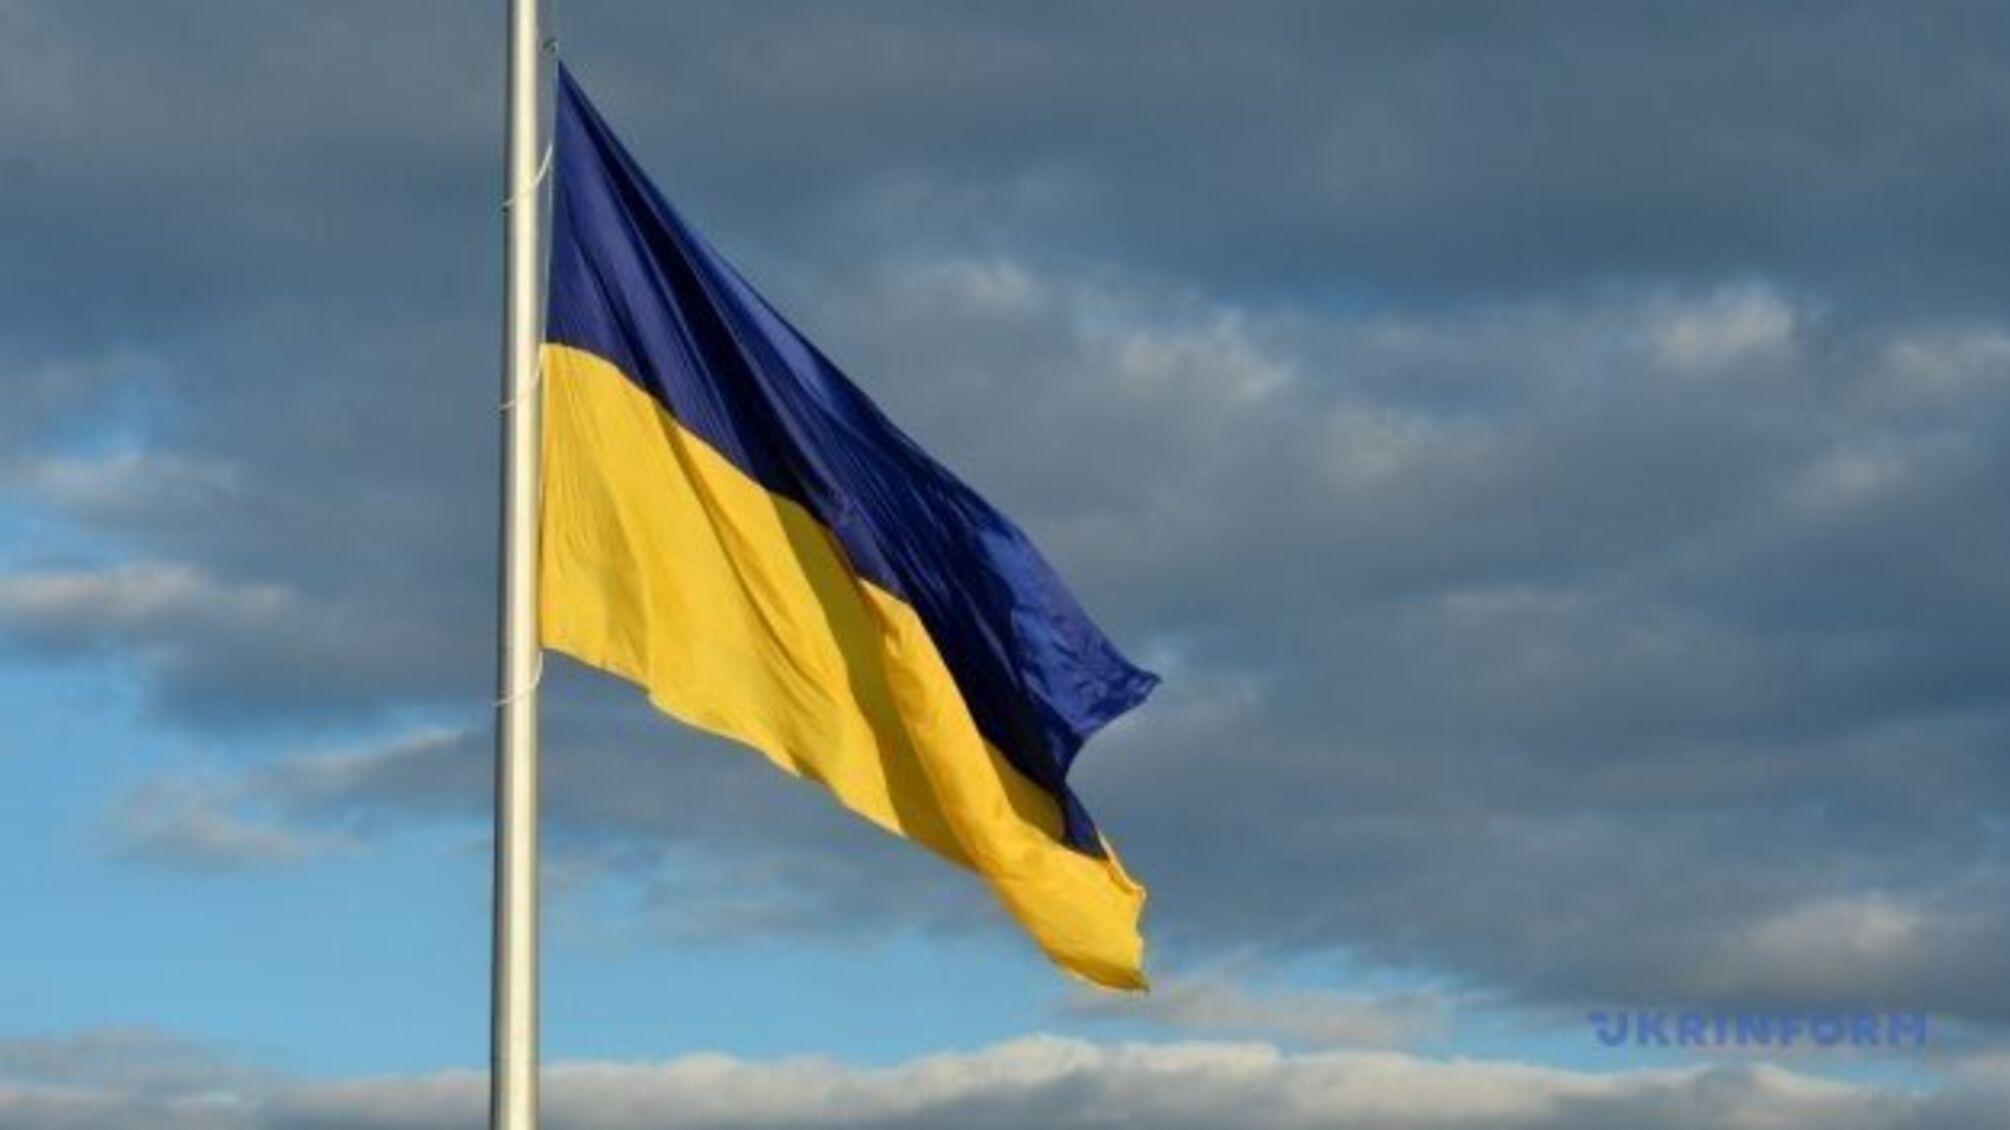 Над Києвом підняли найбільший прапор України